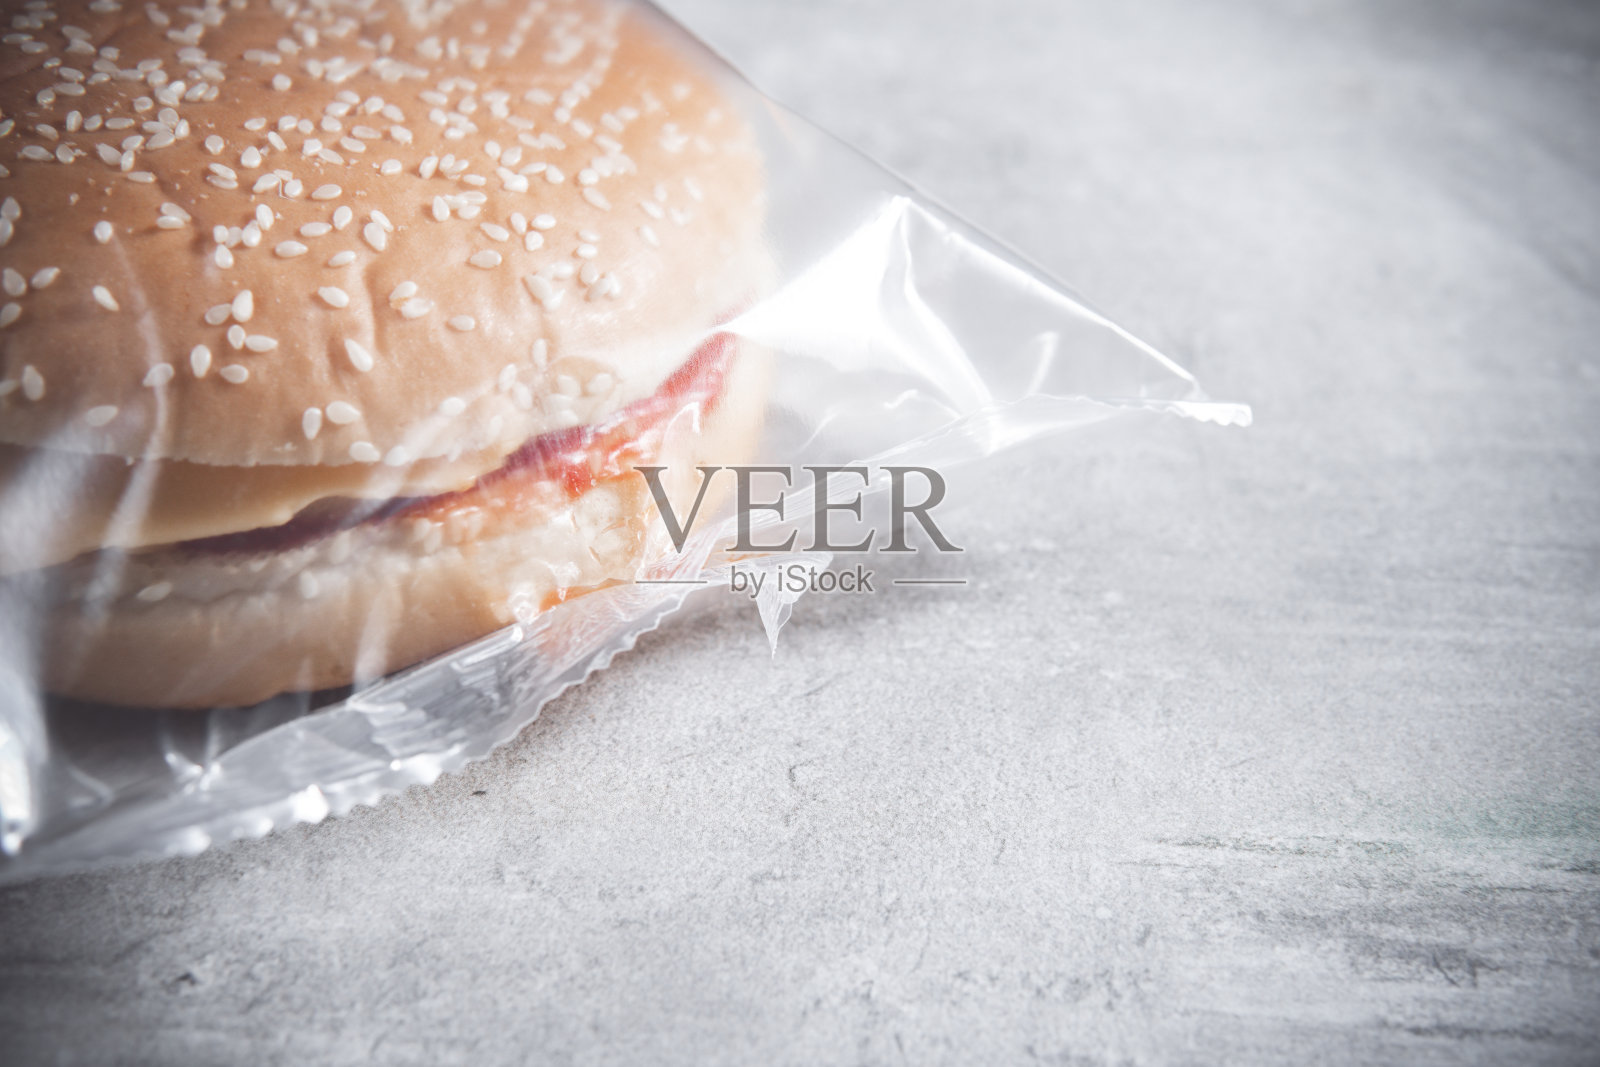 汉堡包放在一个透明的塑料盒子或尼龙袋子里带走照片摄影图片